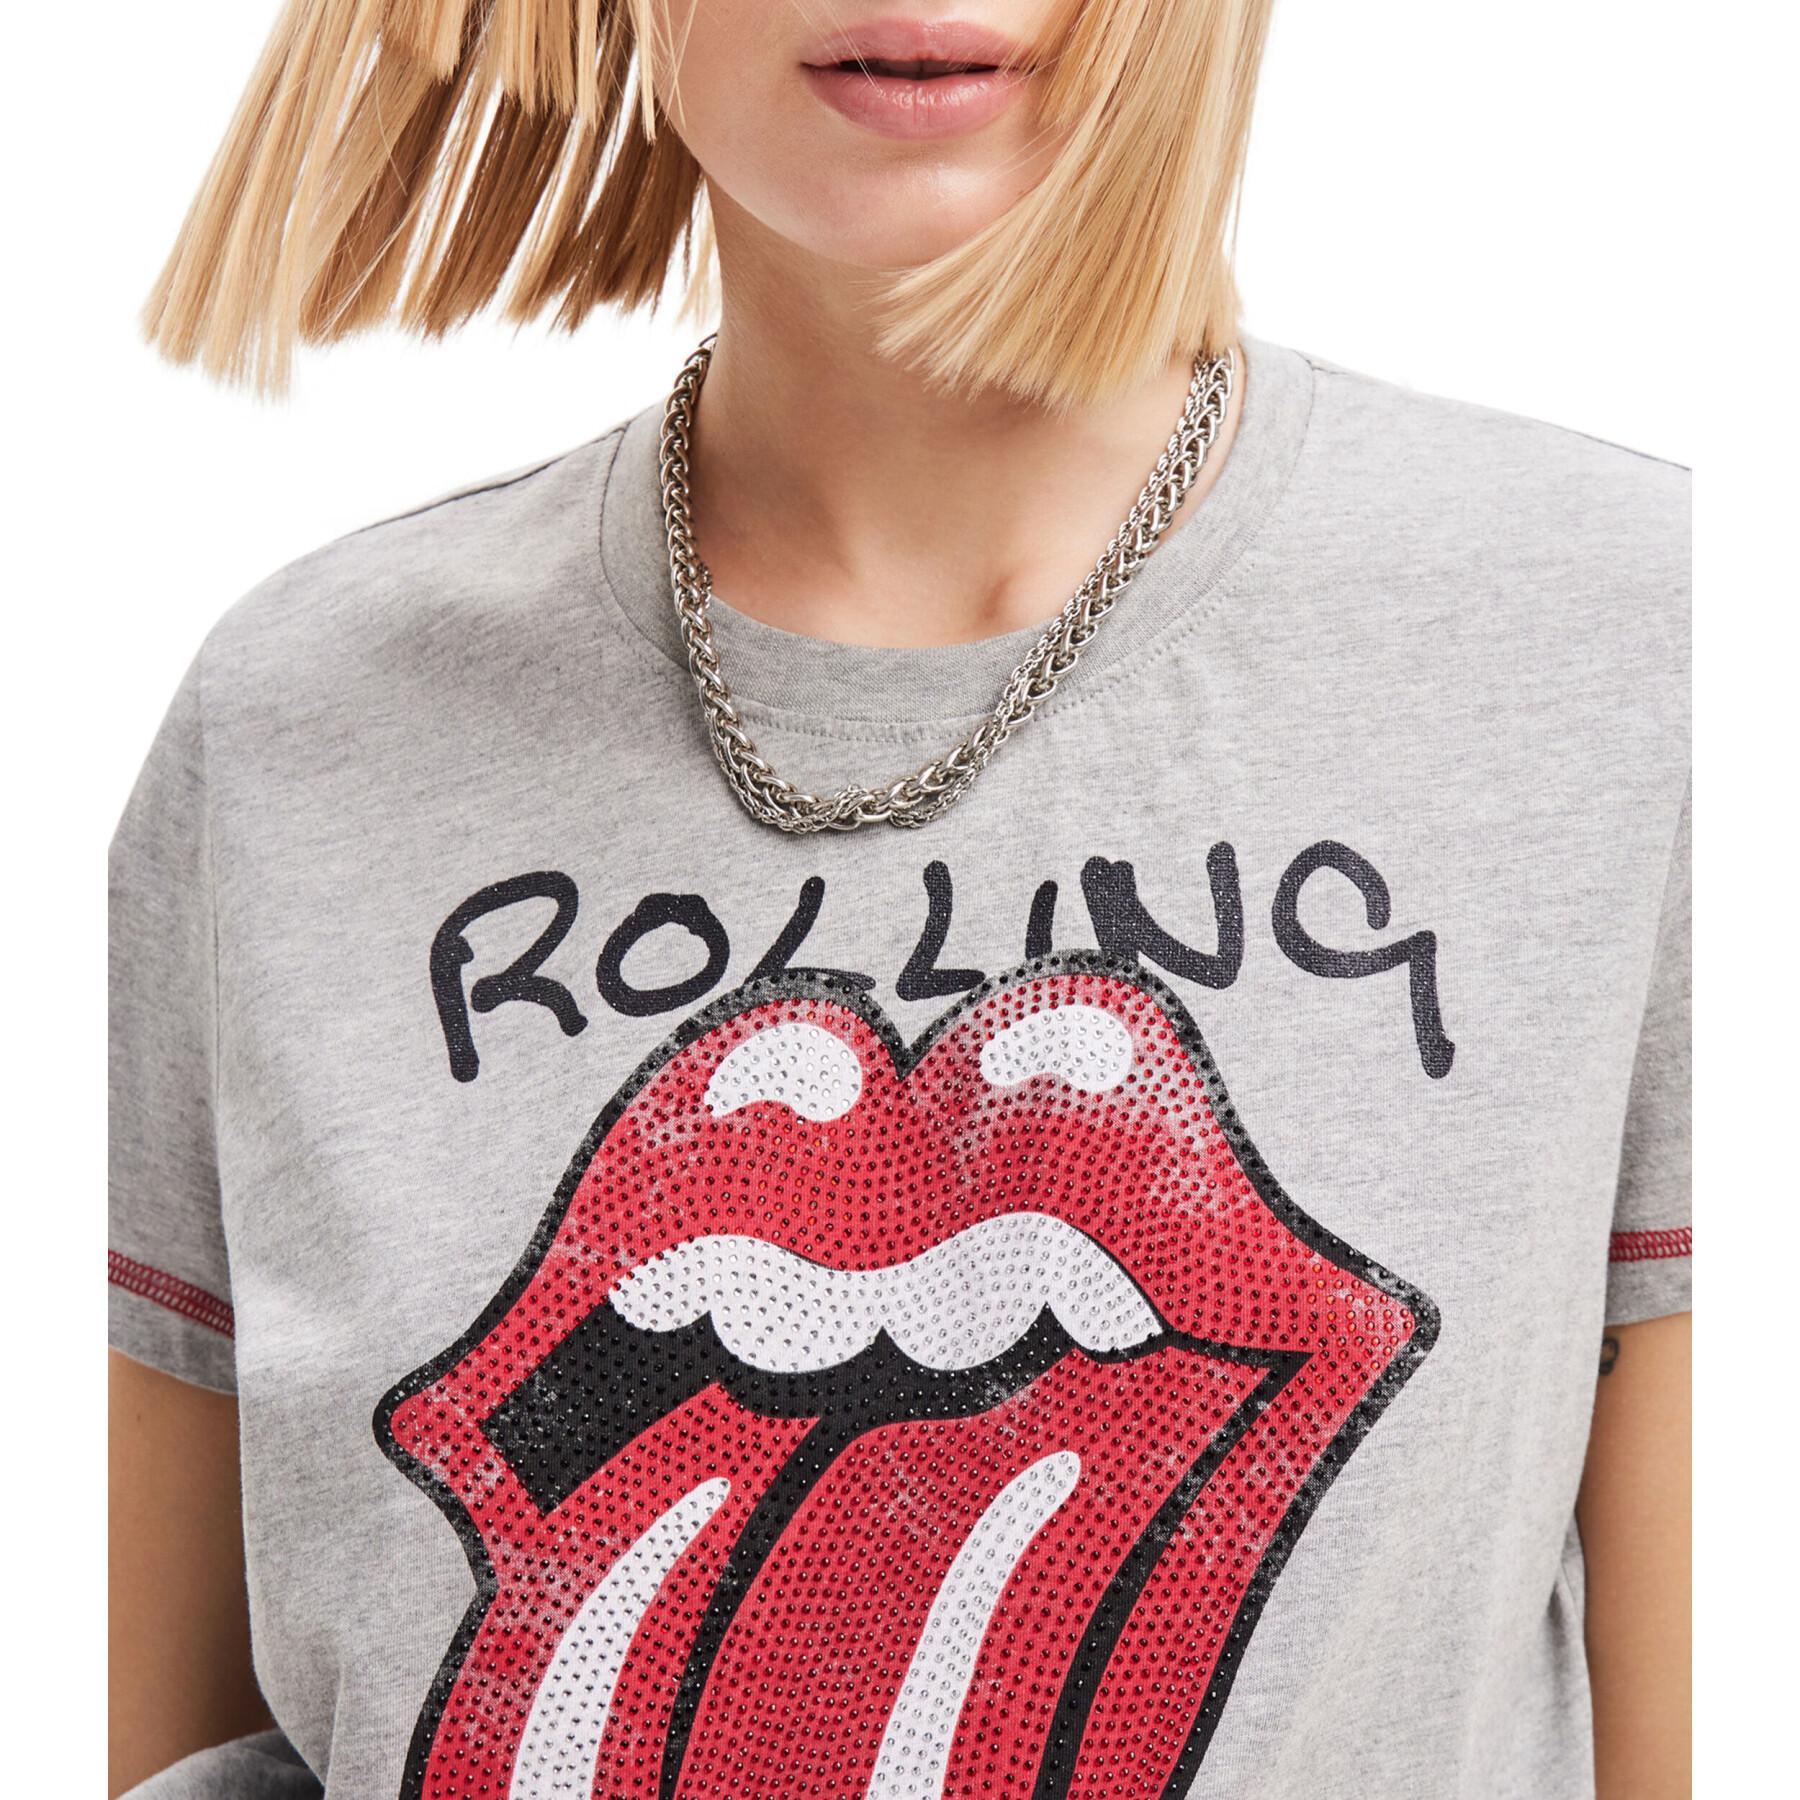 T-Shirt Damen Desigual The Rolling Stone